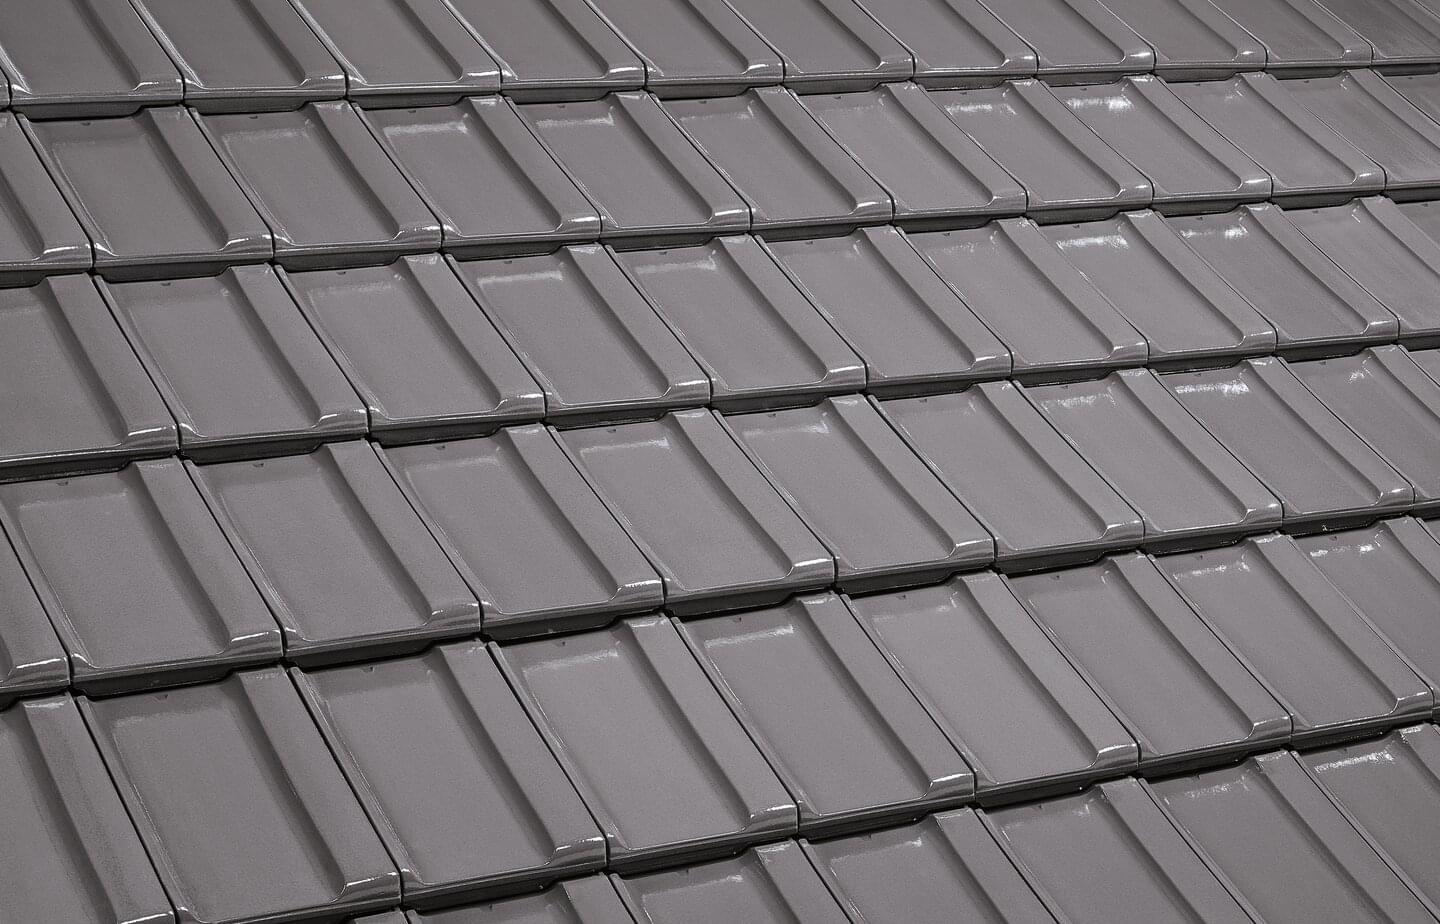 Reformpfanne SL - Basalt grey | Image roof surface | © © ERLUS AG 2021